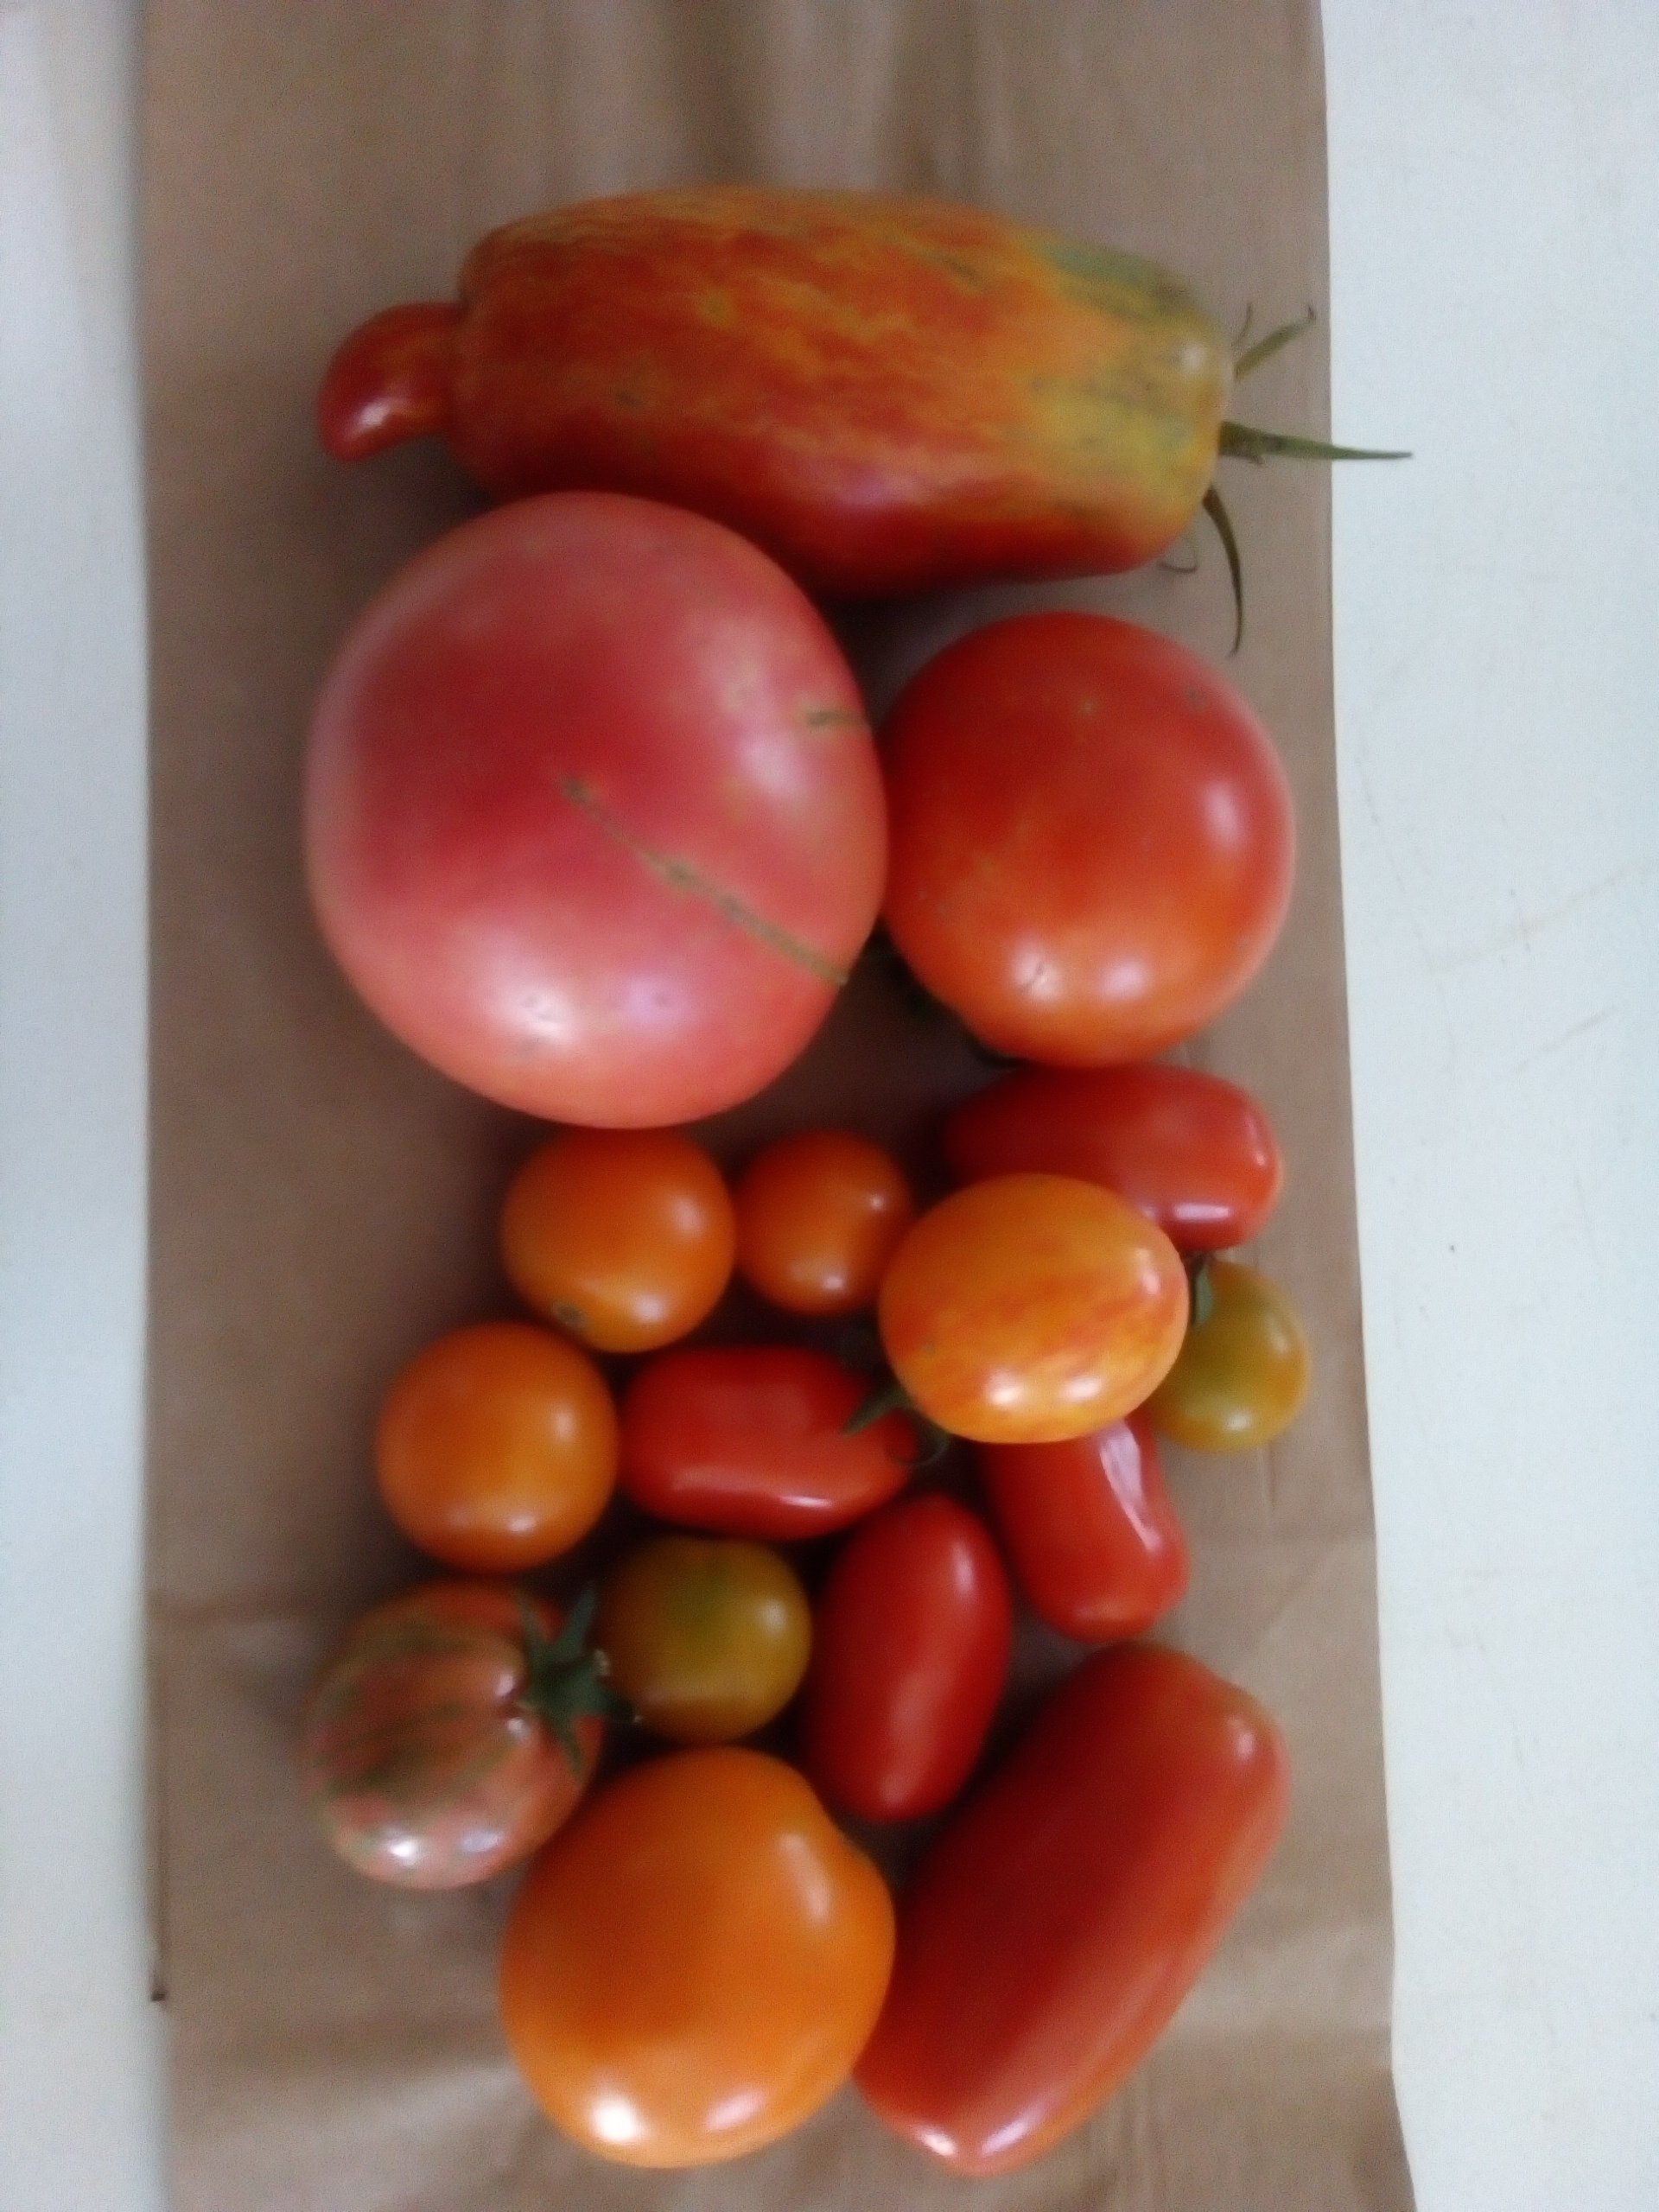 Next Happening: Week 9 -- Tomatoes